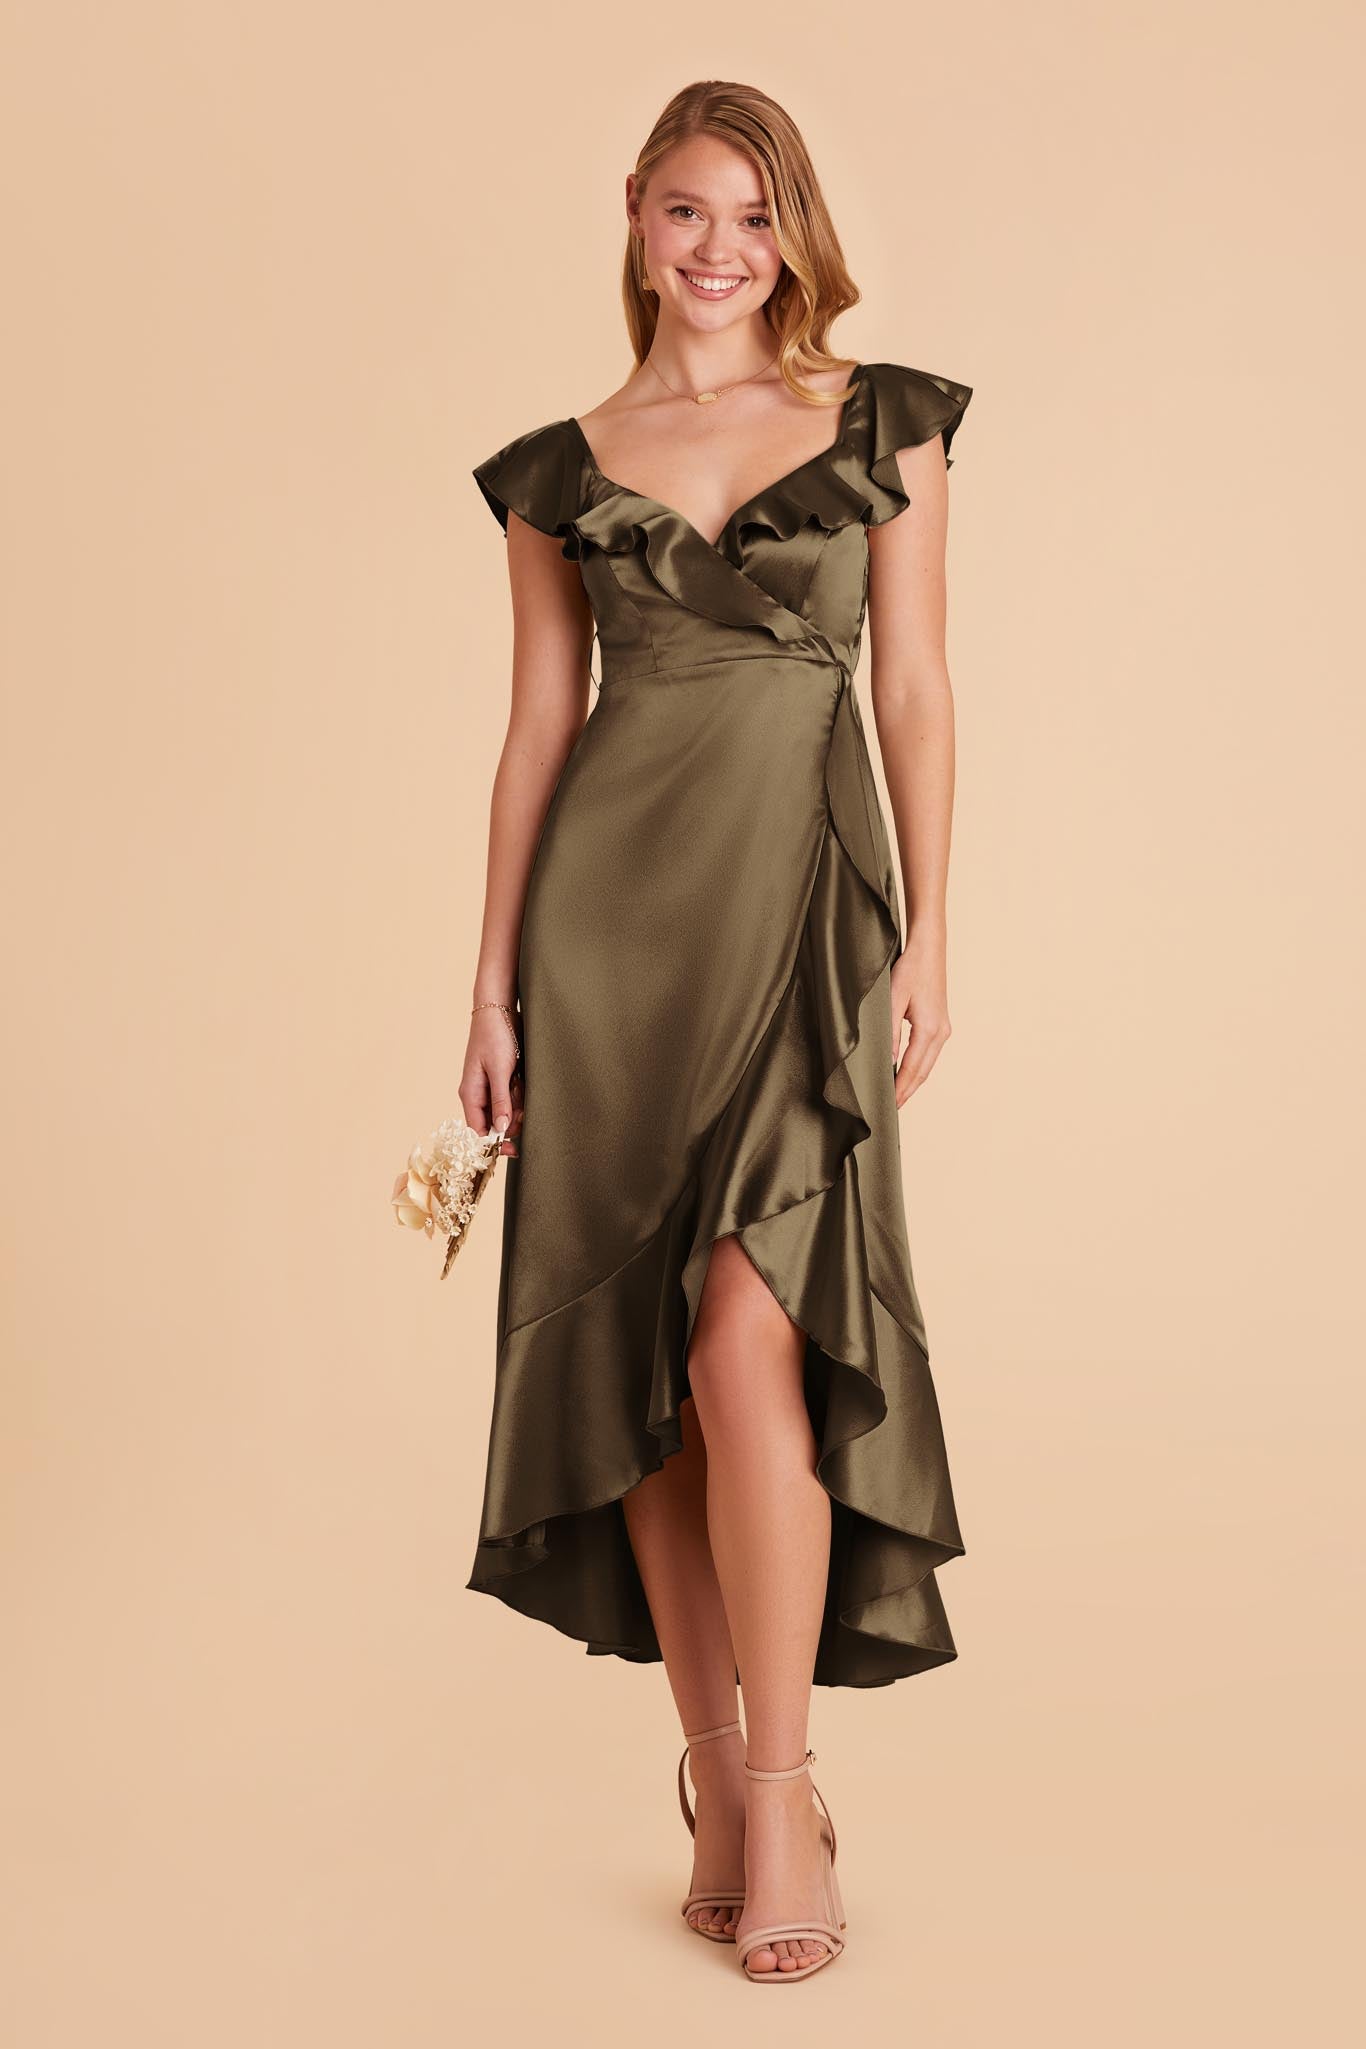 Olive James Satin Midi Dress by Birdy Grey